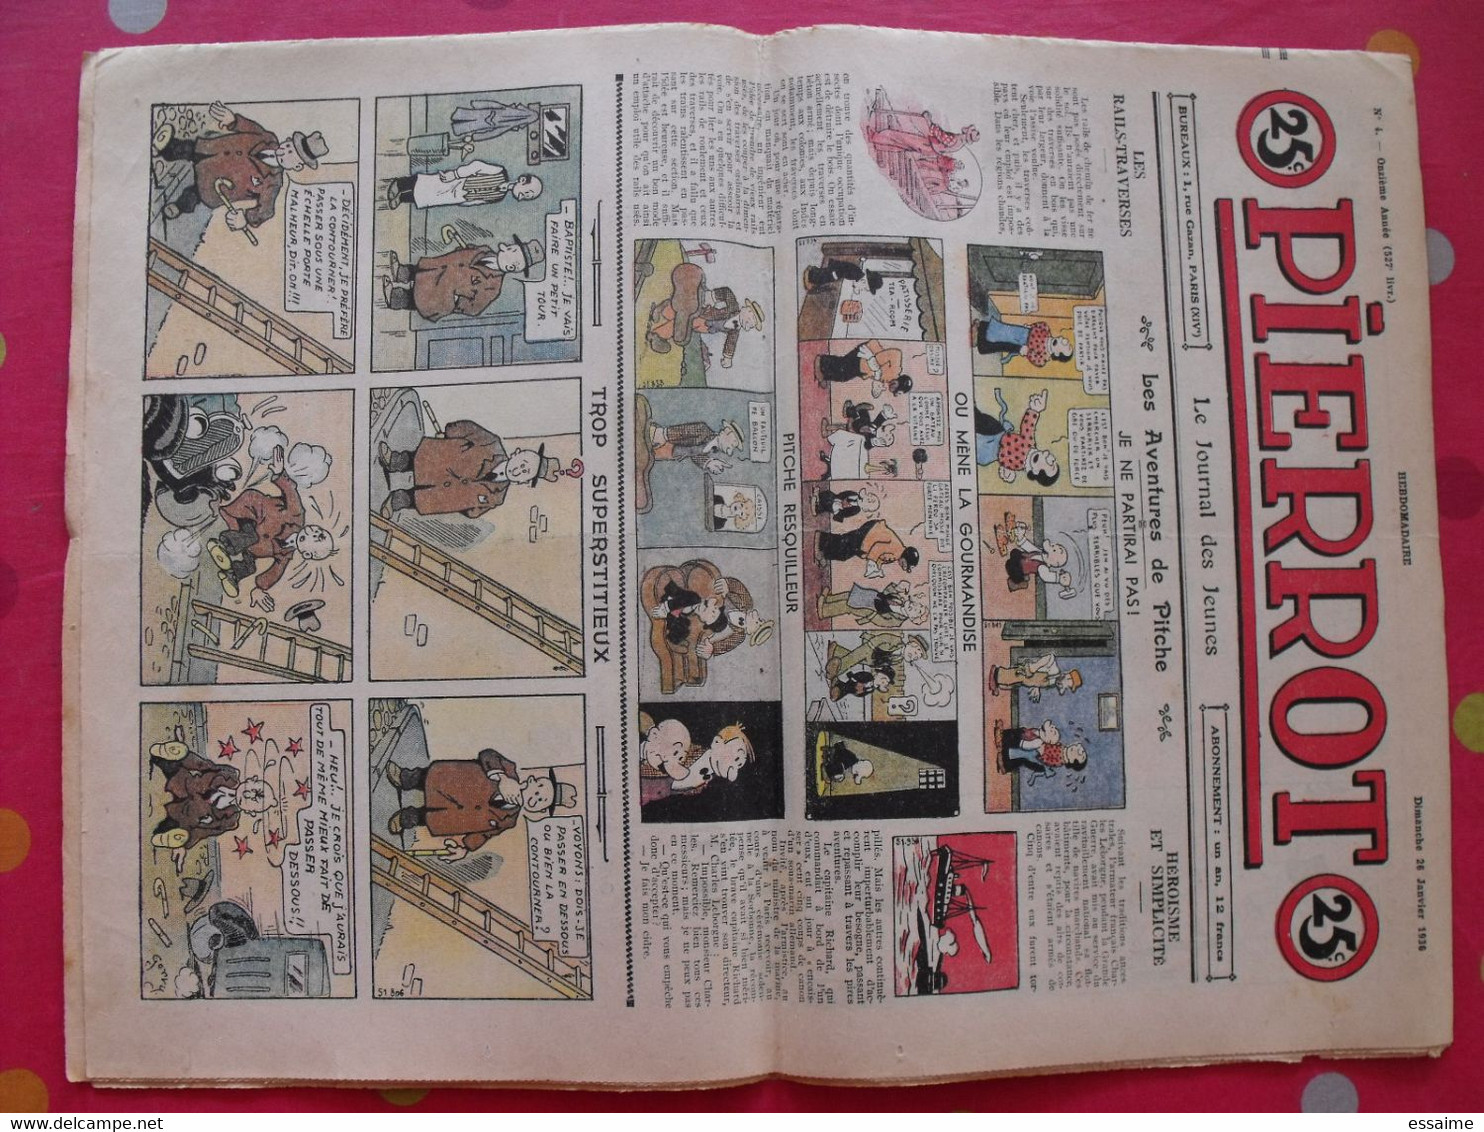 52 revues BD Pierrot de 1936. année complète. marijac jeanjean le rallic ferran cuvillier. A redécouvrir